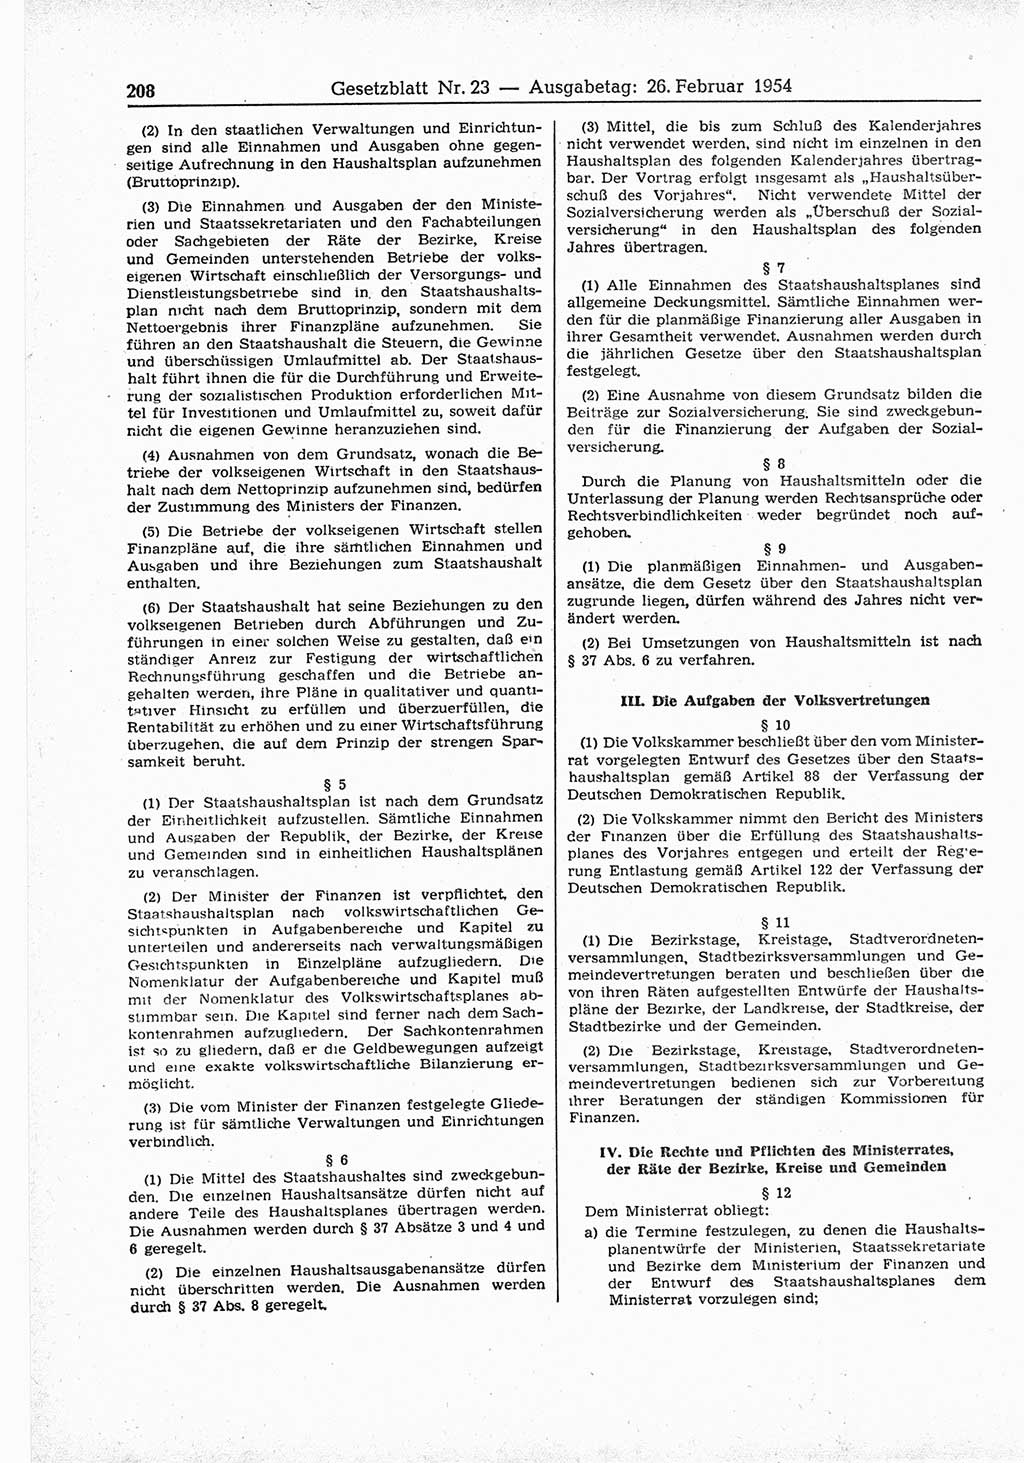 Gesetzblatt (GBl.) der Deutschen Demokratischen Republik (DDR) 1954, Seite 208 (GBl. DDR 1954, S. 208)